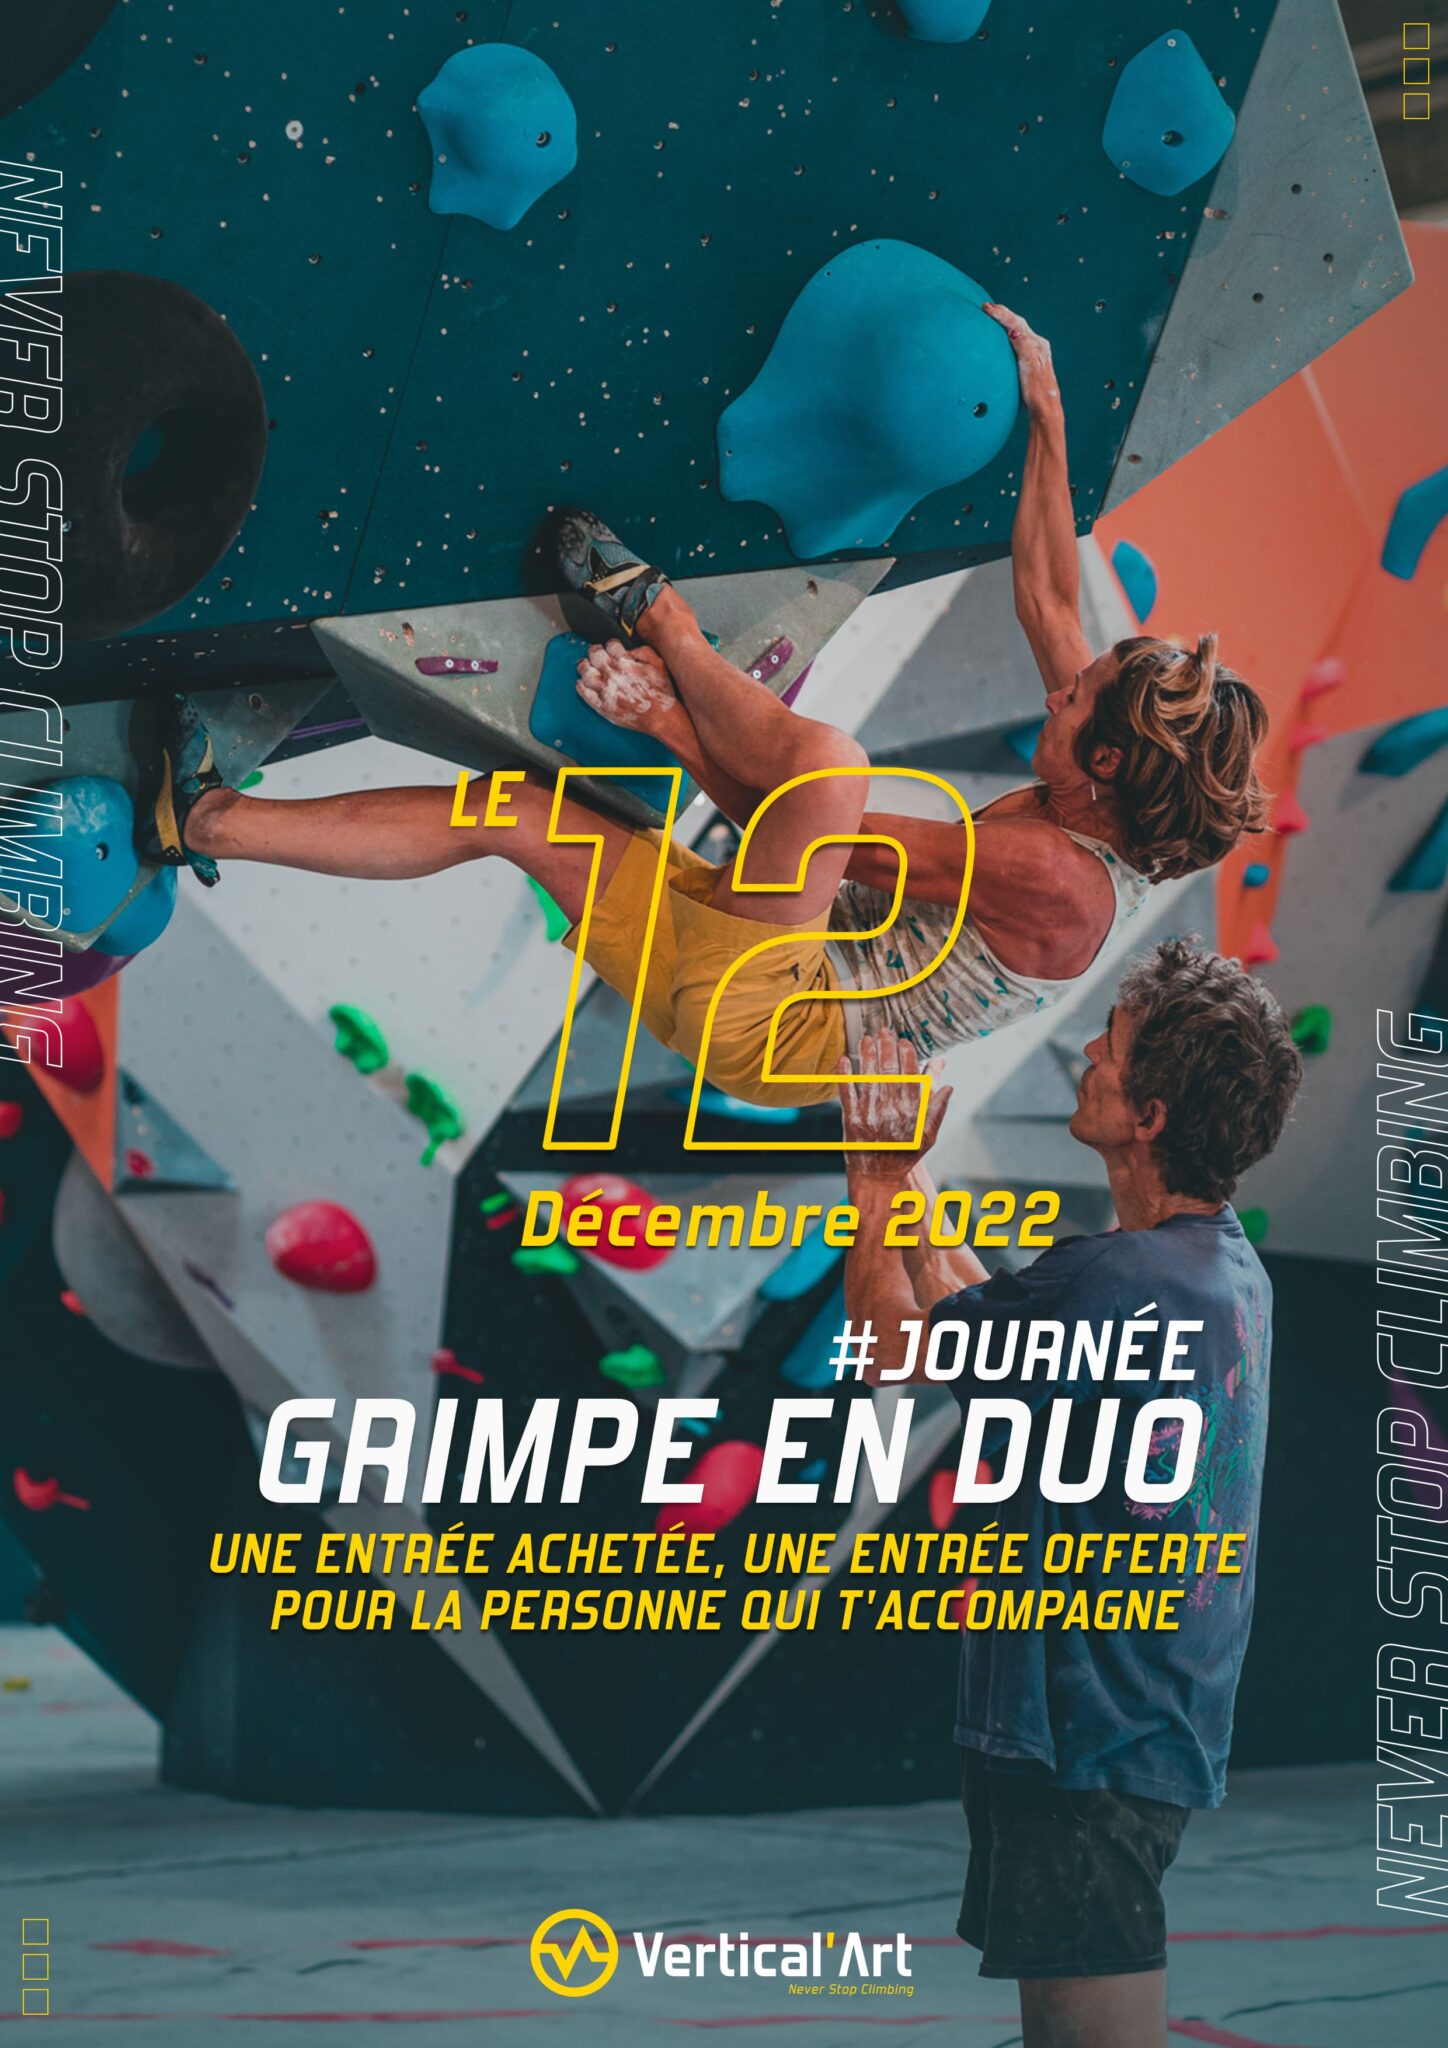 Grimpe en duo Vertical'Art SQY 12 décembre 2022 une entrée achetée, une offerte